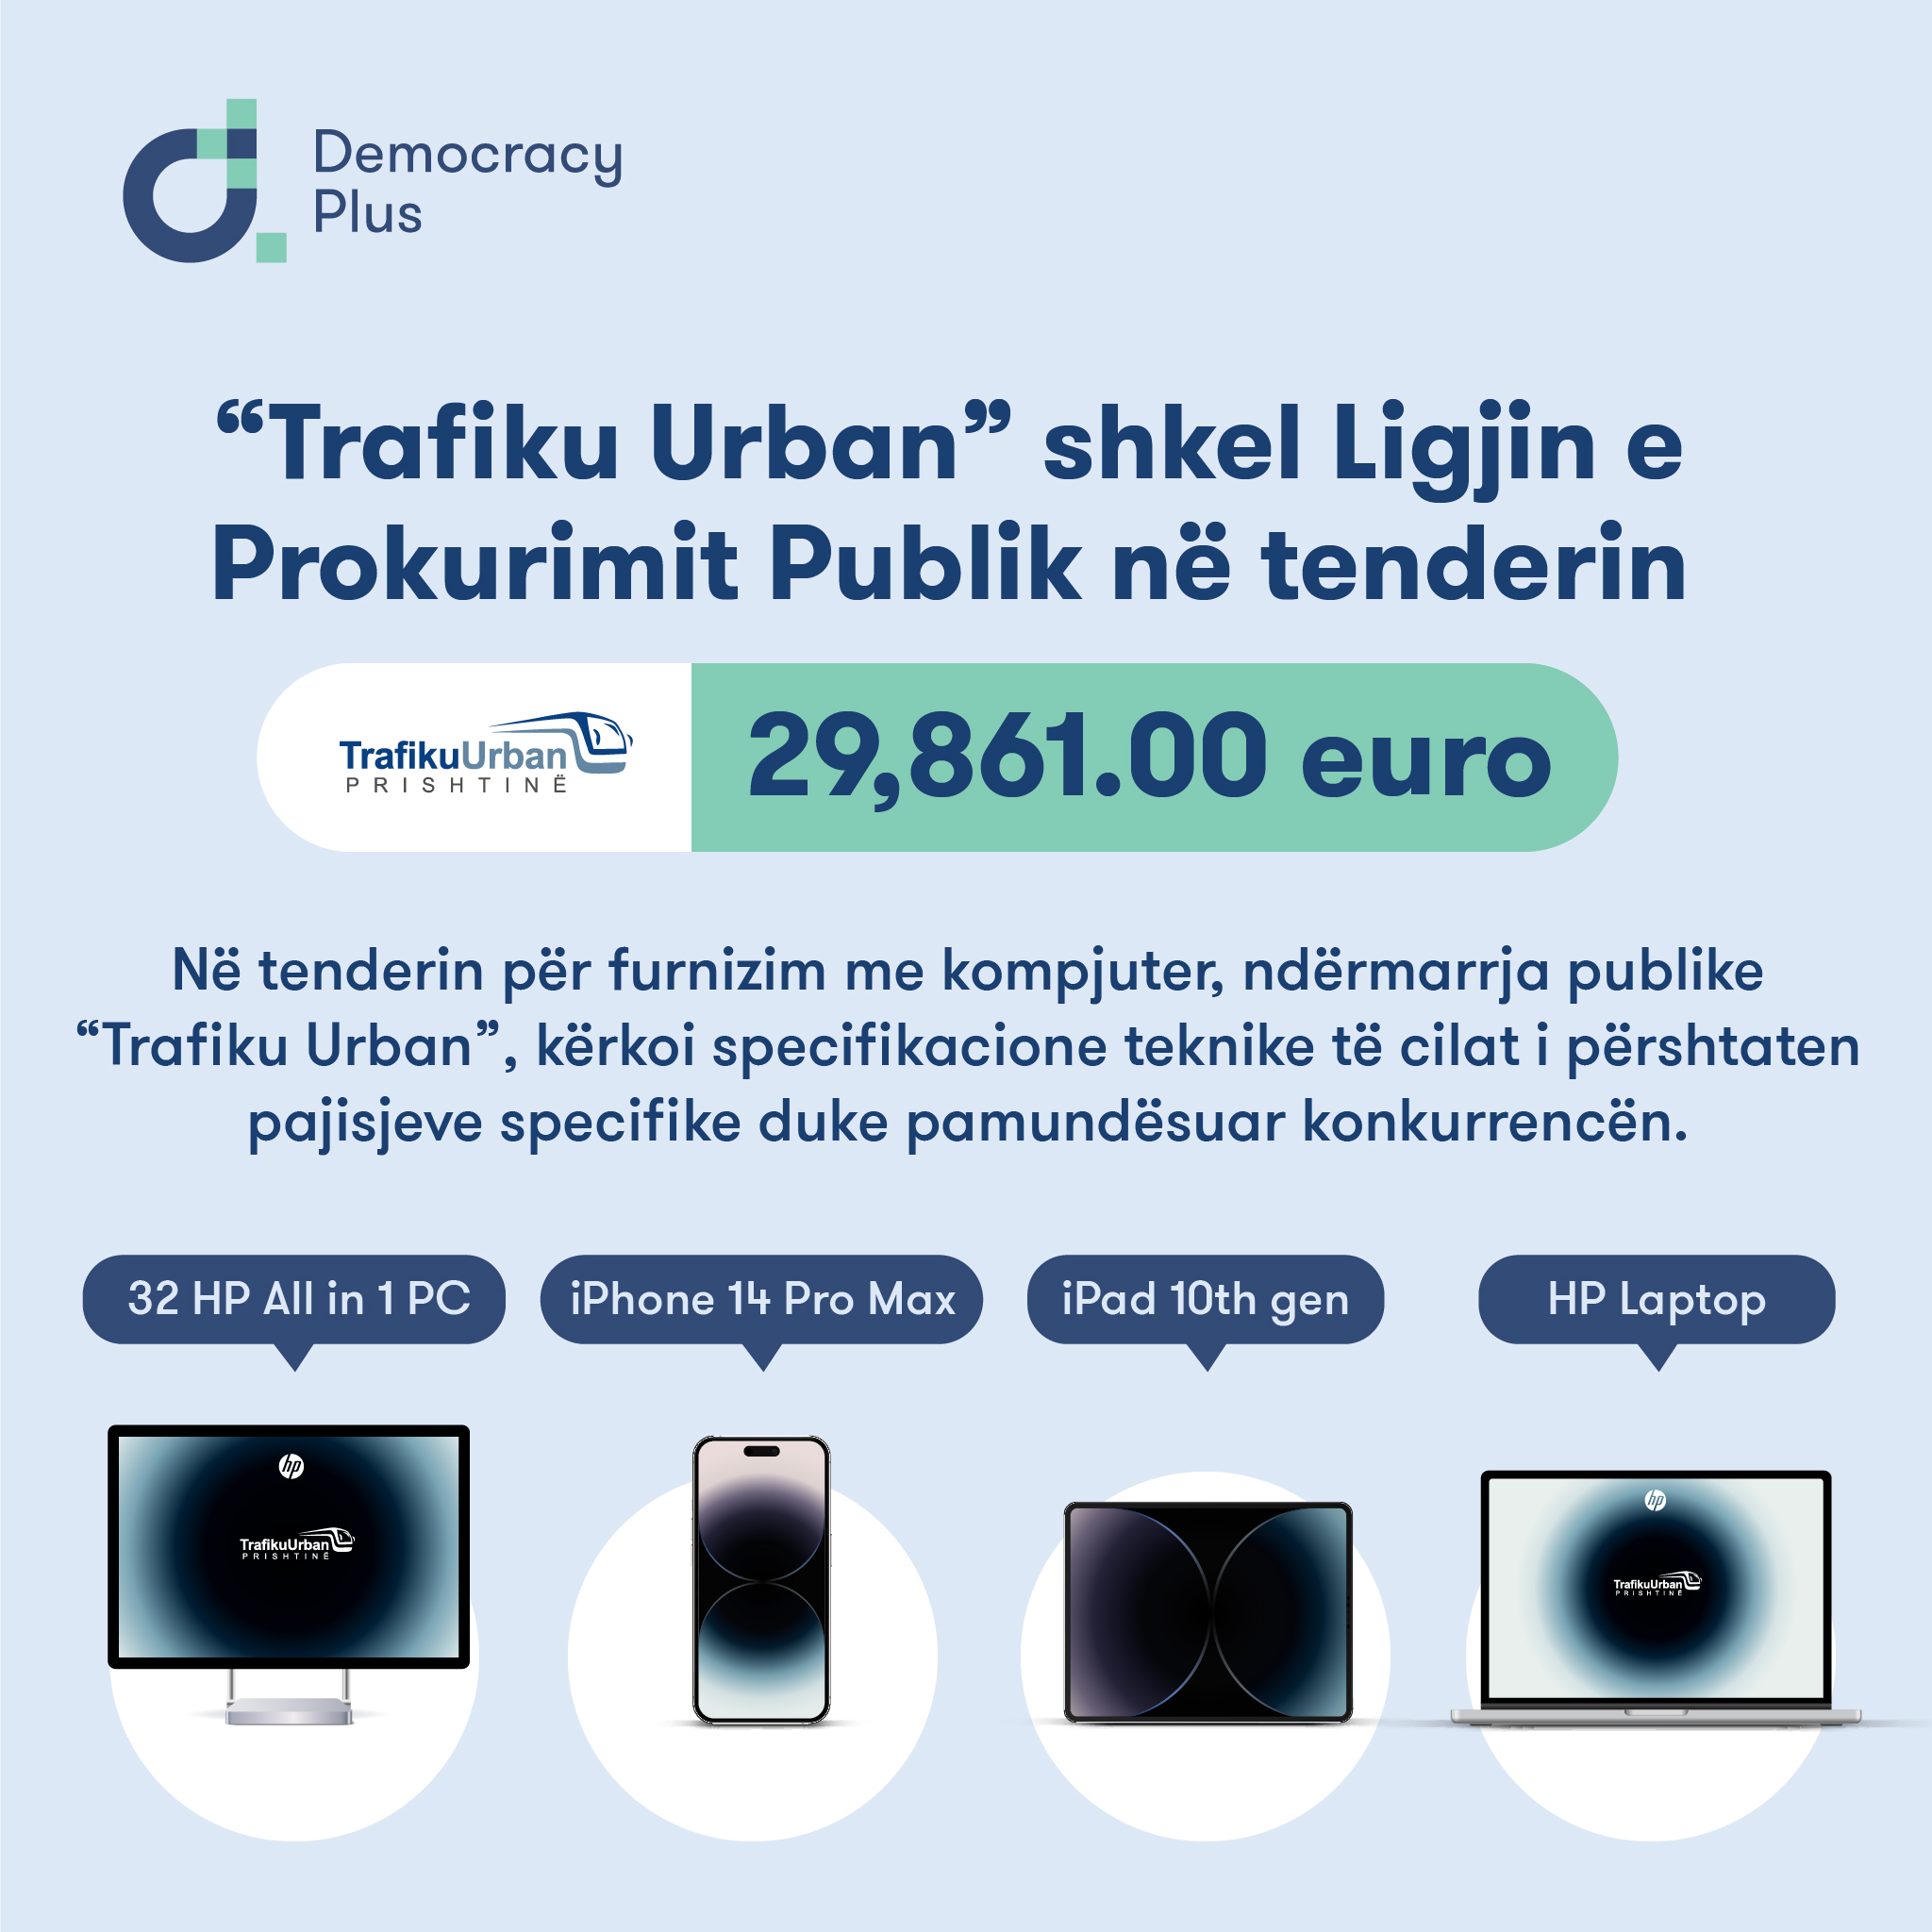 “Trafiku Urban” shkel Ligjin e Prokurimit Publik në tenderin me vlerë 29,861.00 euro